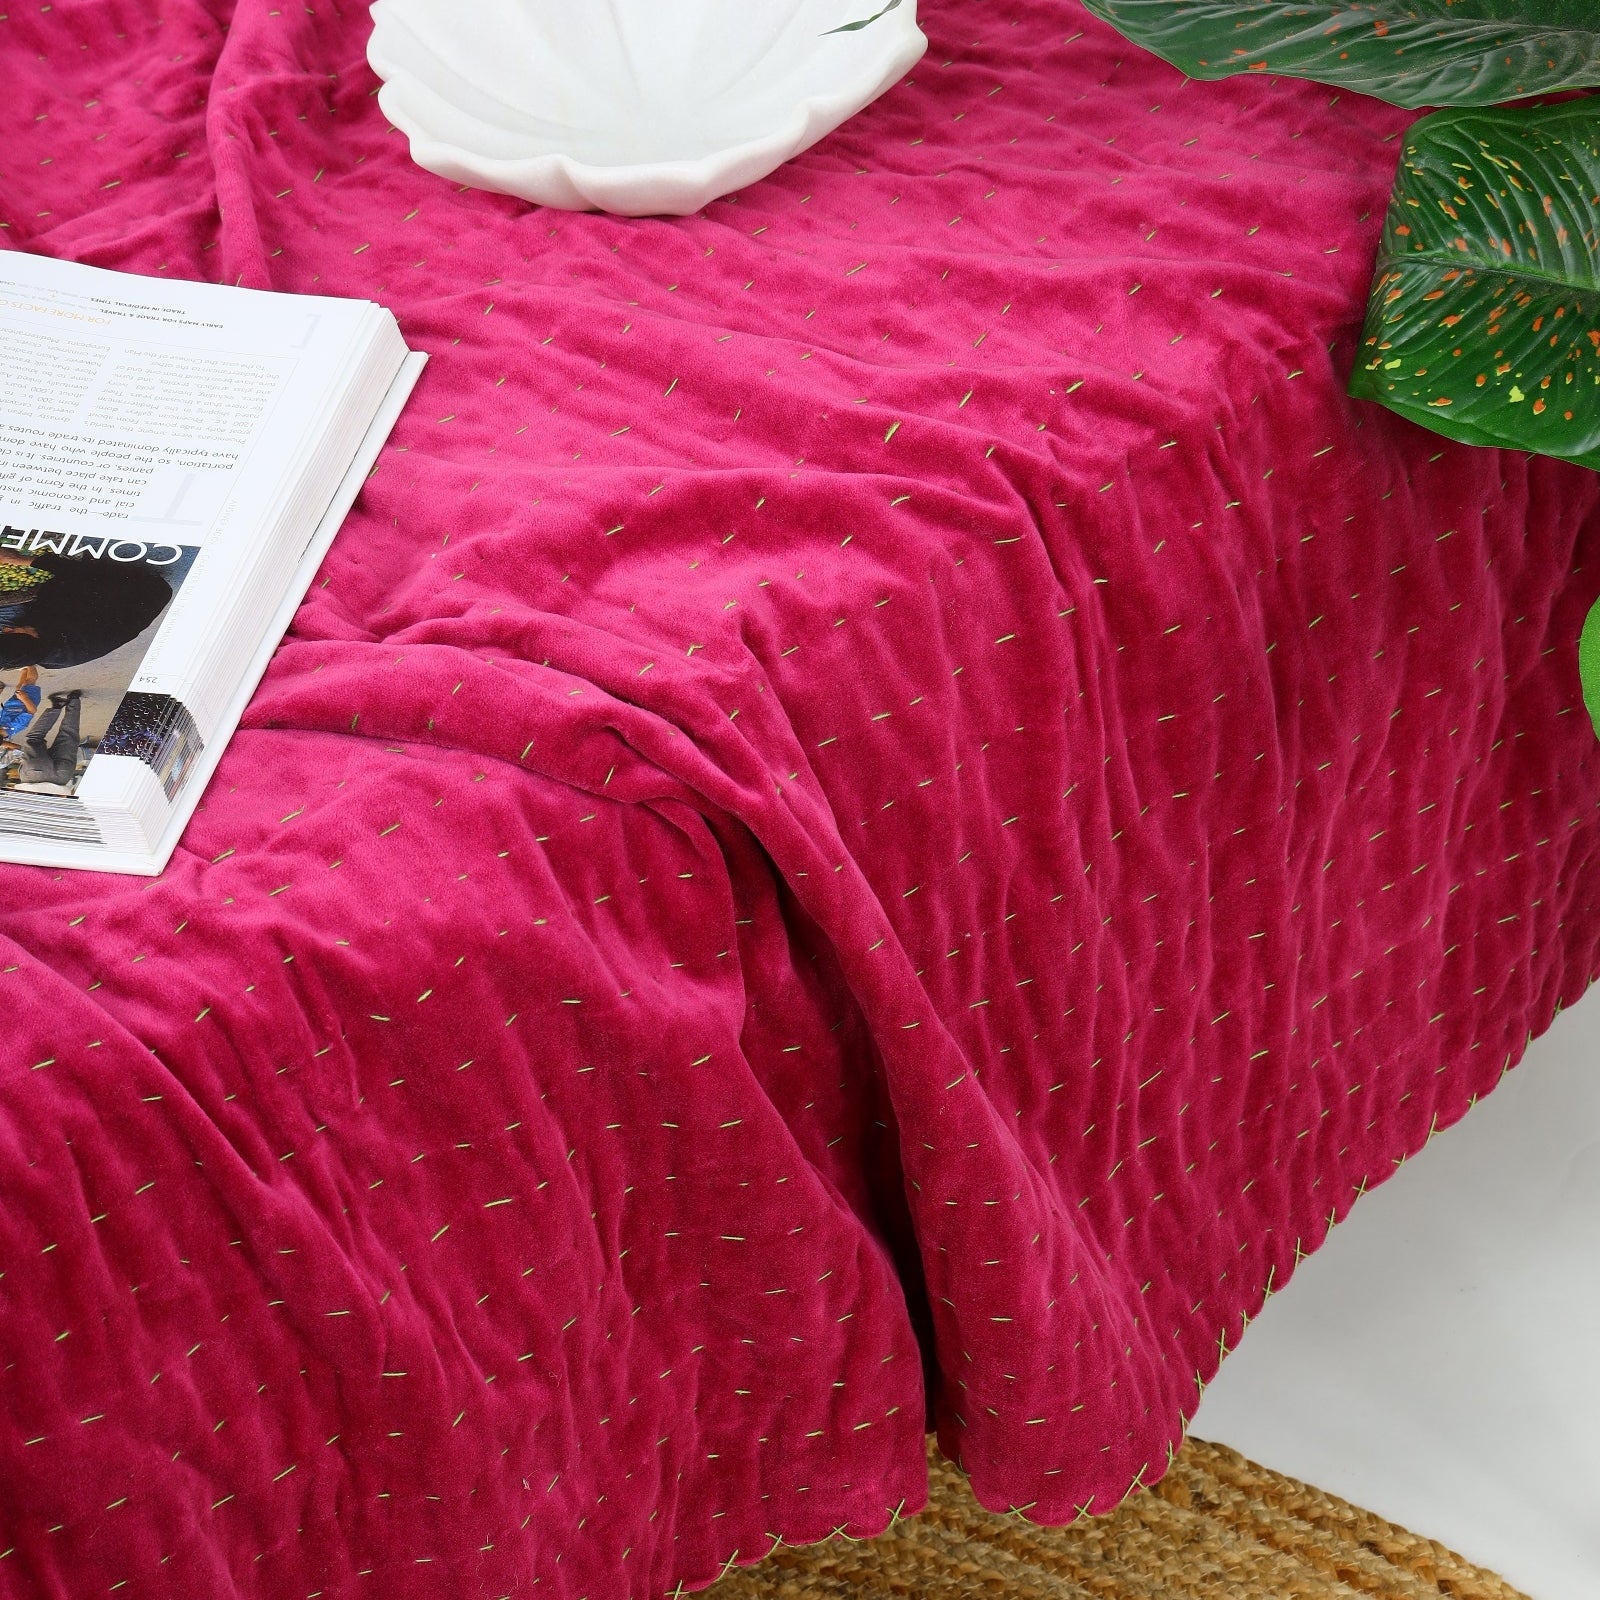 Handmade Velvet Kantha Quilt - Boho Block Print Bedspread